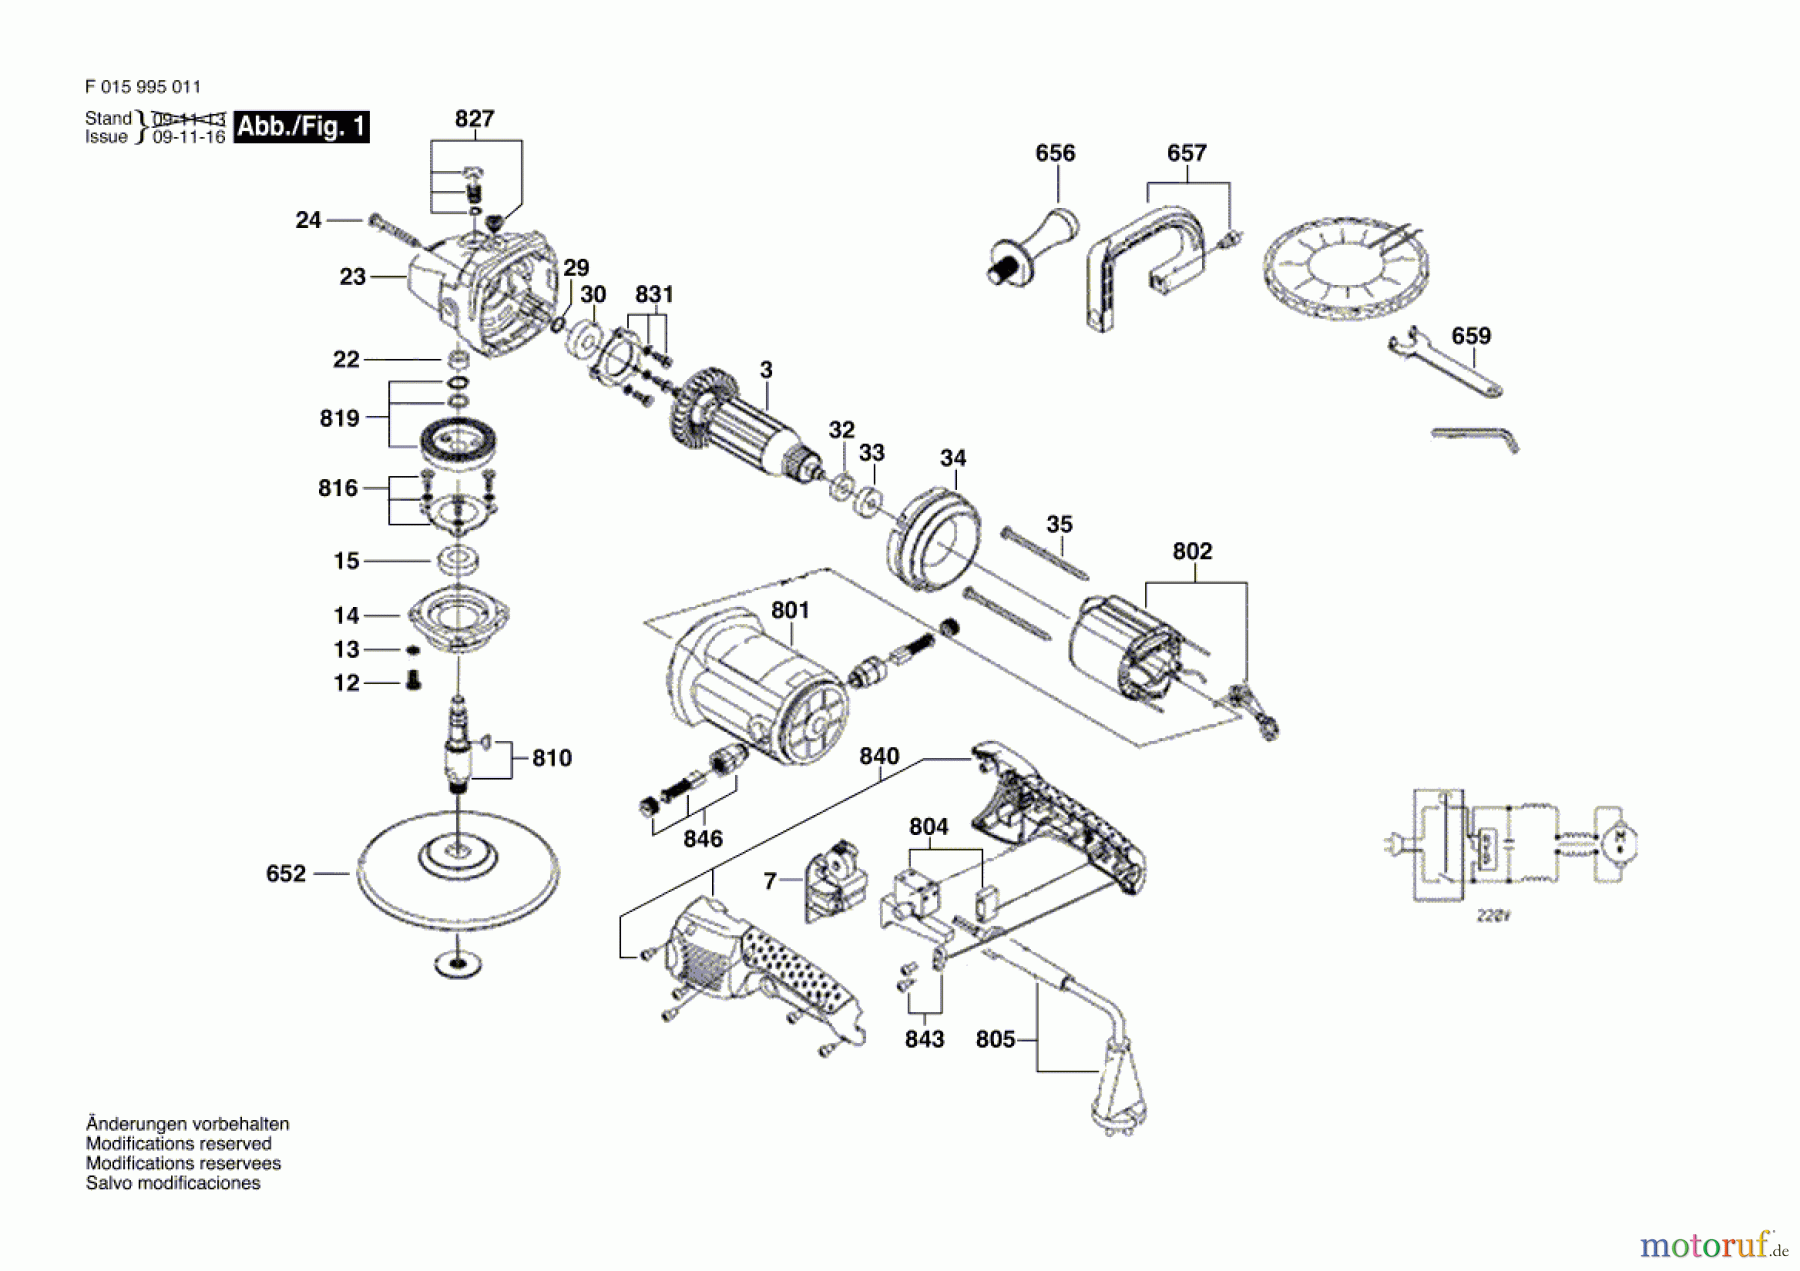  Bosch Werkzeug Winkelpolierer 9950 Seite 1